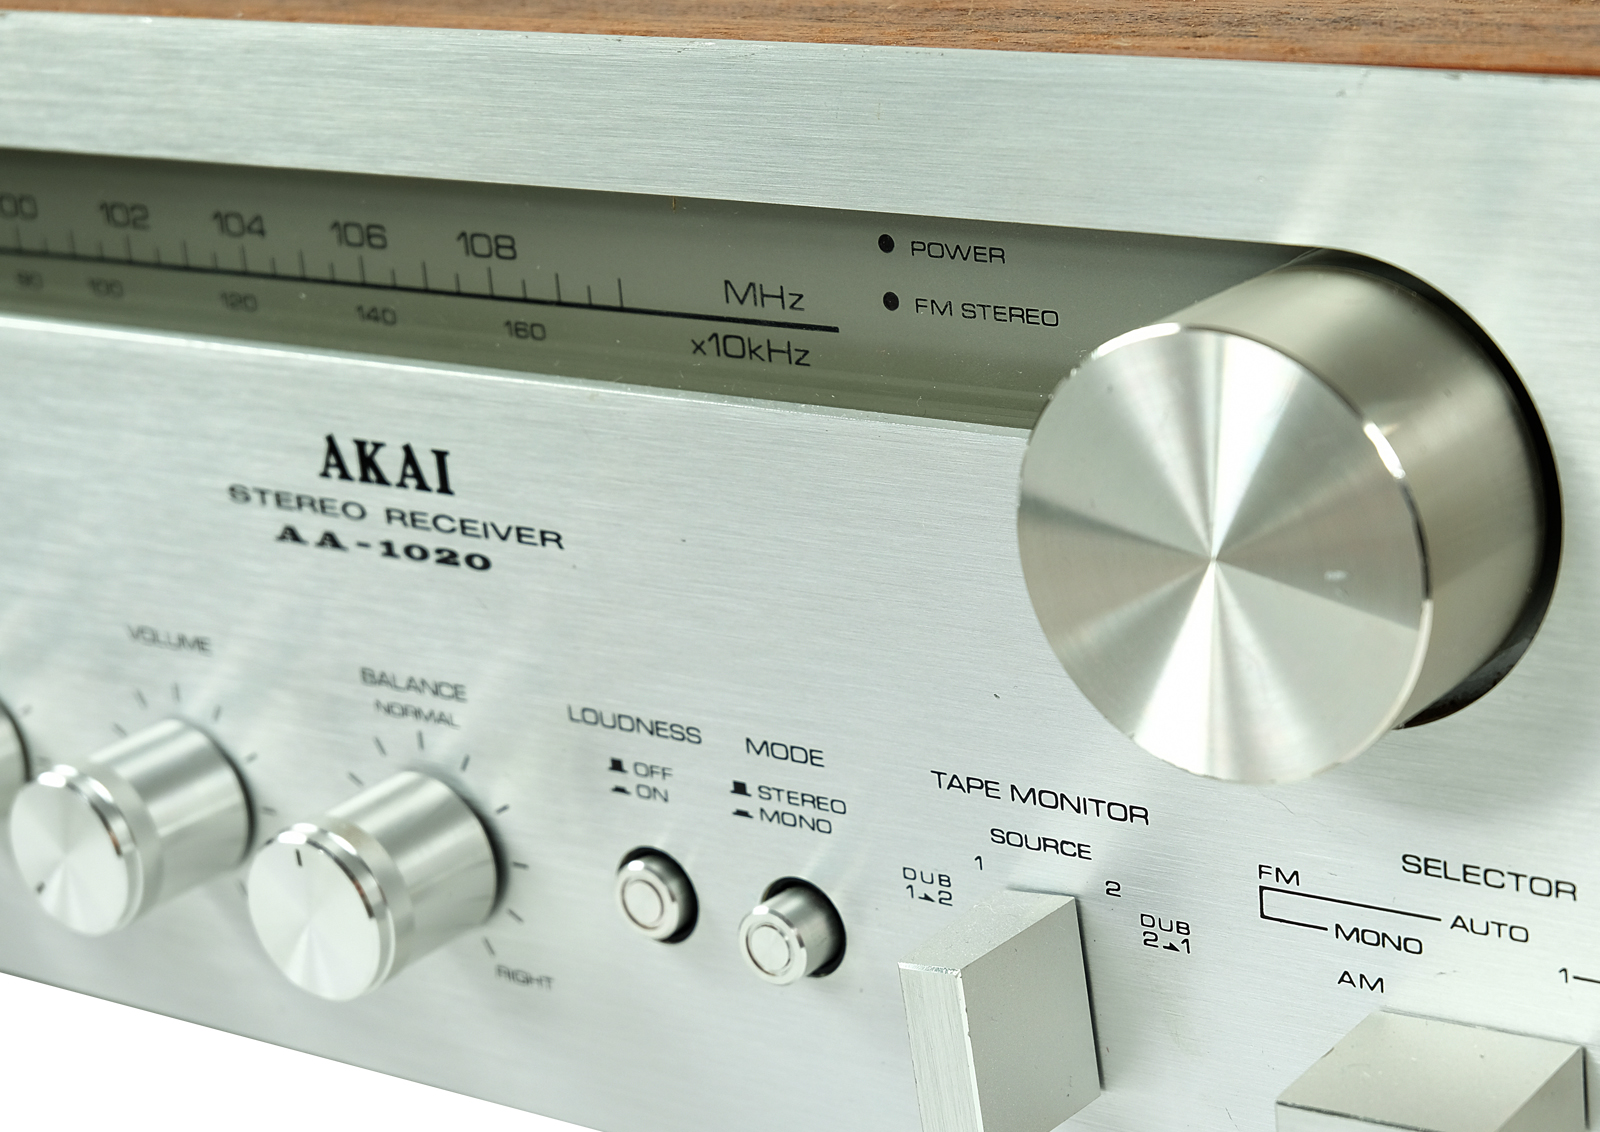 Akai AA 1020 Stereo Receiver.